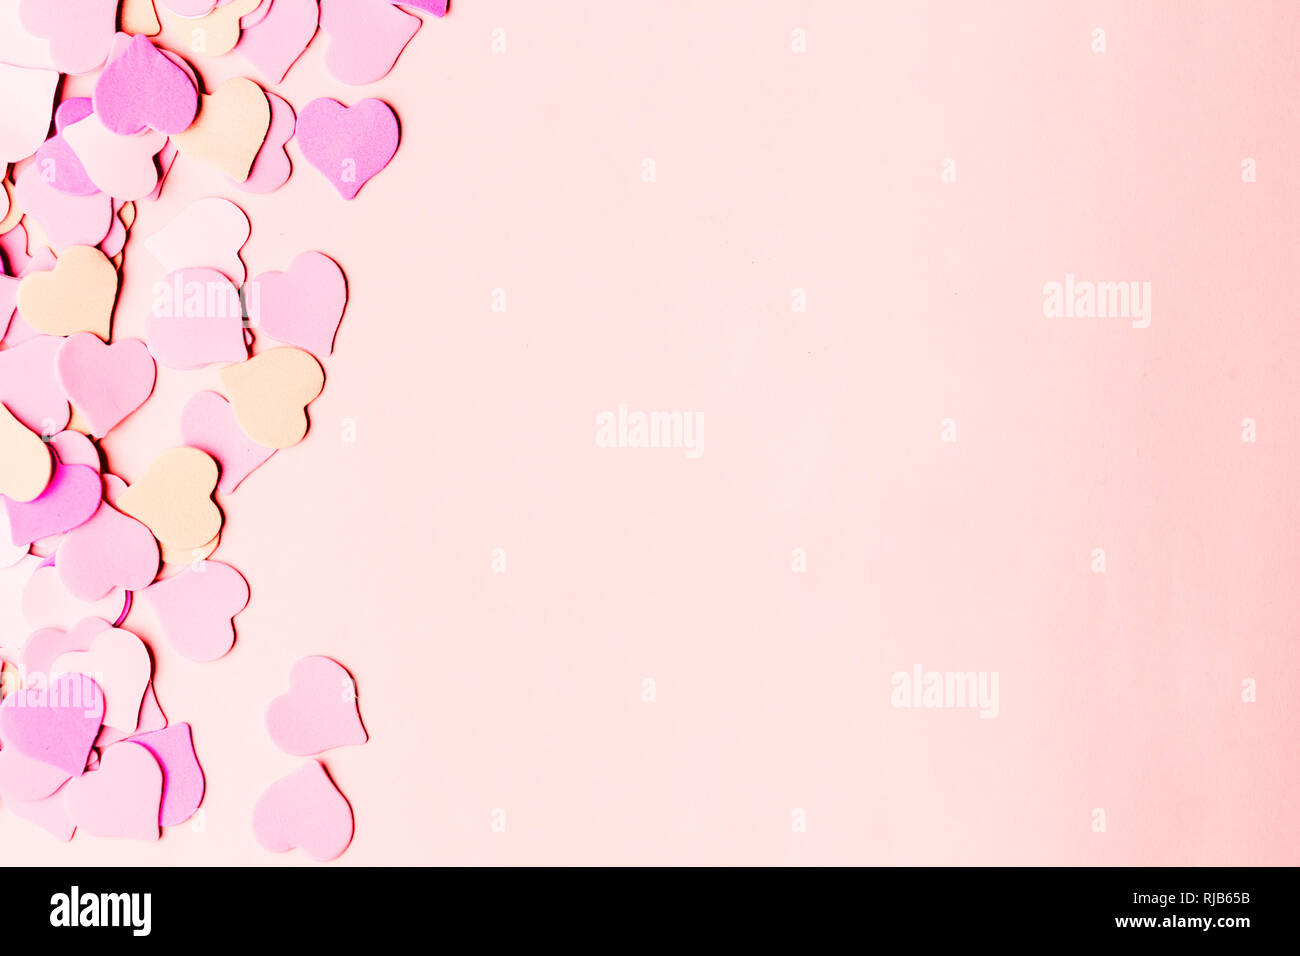 Nền Valentine phối cảnh với trái tim màu hồng nhạt: Sản phẩm của chúng tôi giúp bạn tạo ra hình nền Valentine đầy màu sắc và tràn đầy tình yêu, với những trái tim màu hồng pastel tuyệt đẹp. Hãy xem hình ảnh để tìm kiếm lựa chọn tốt nhất cho ngày lễ Valentine của bạn, hoặc để tặng cho người yêu, bạn bè và người thân của bạn.